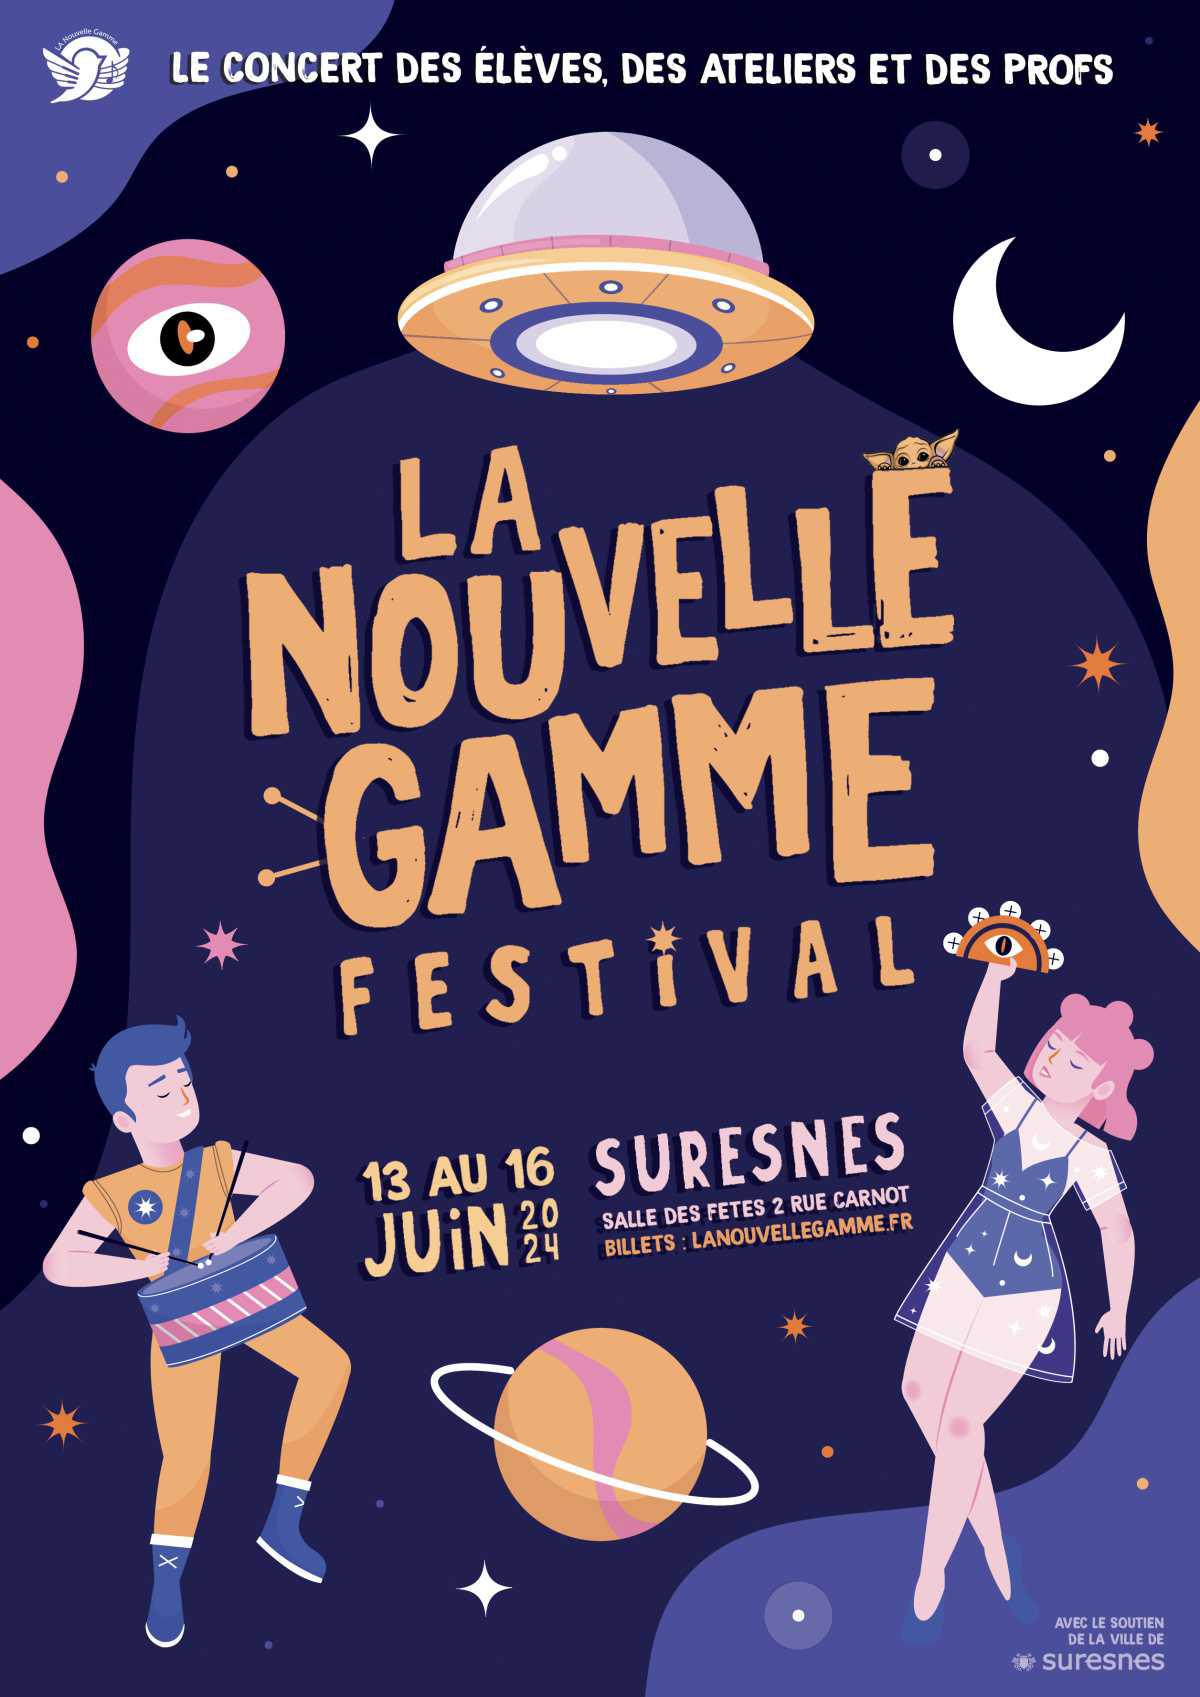 LA Nouvelle Gamme Festival : Concerts des élèves & des ateliers